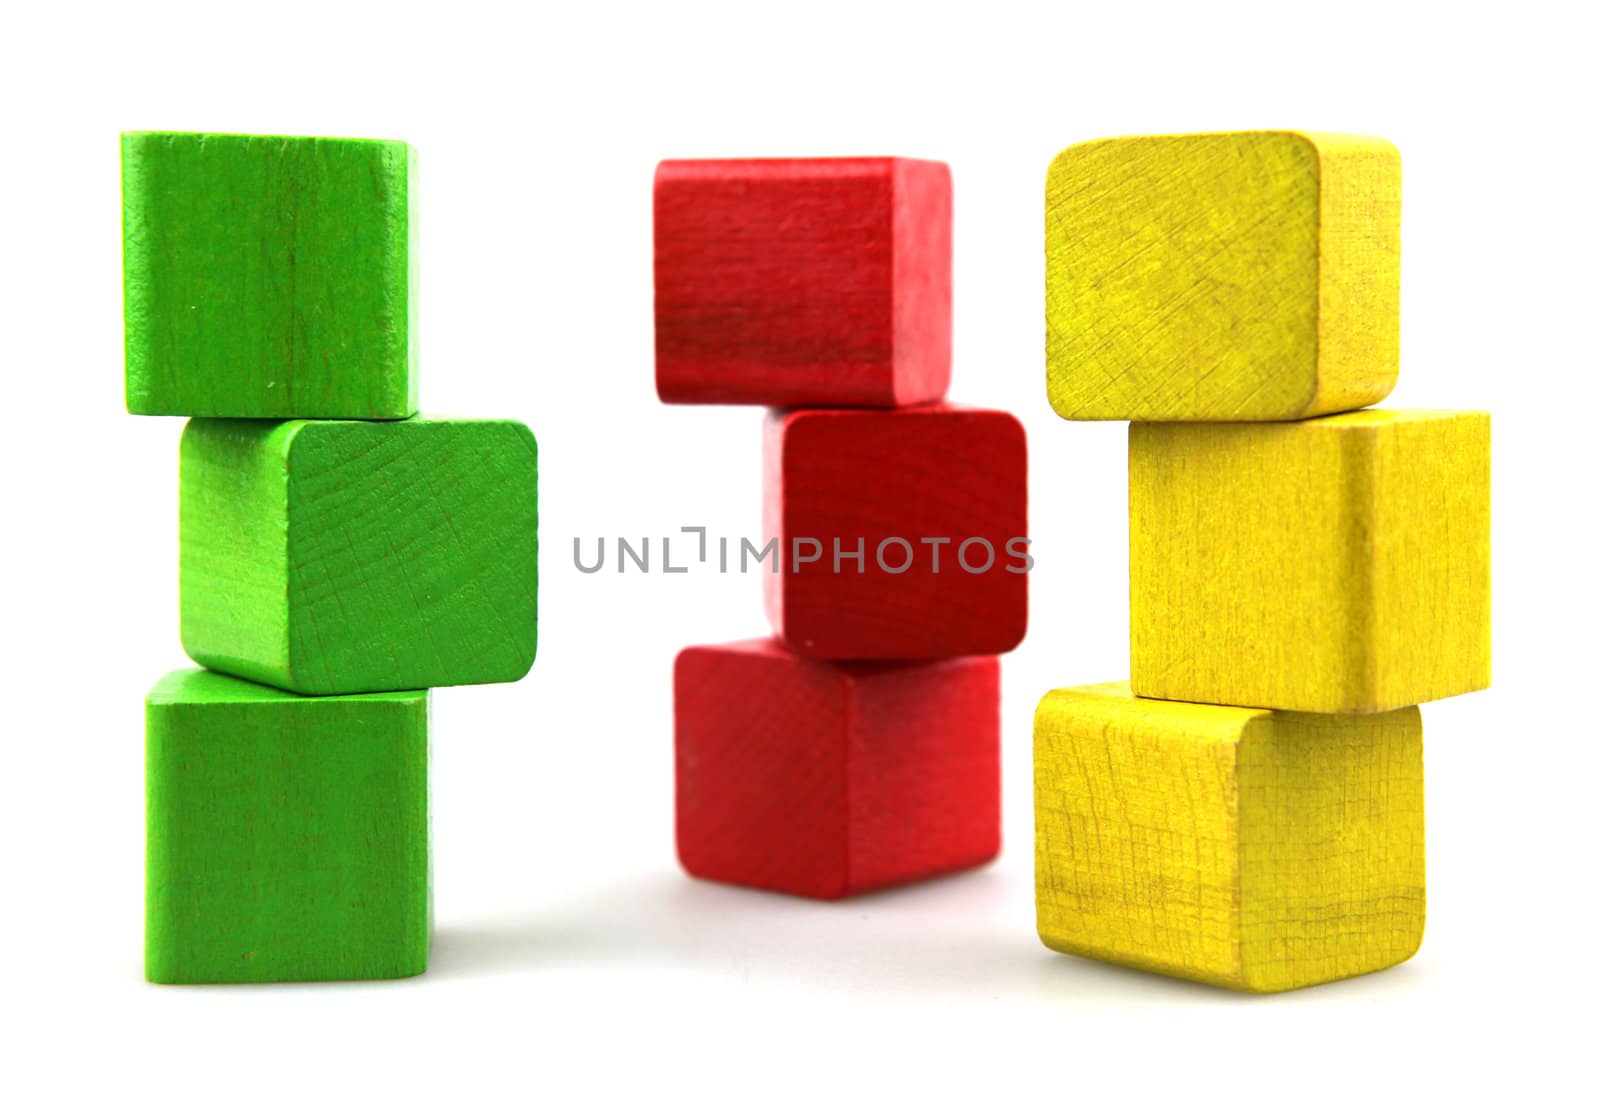 Wooden building blocks by nenov